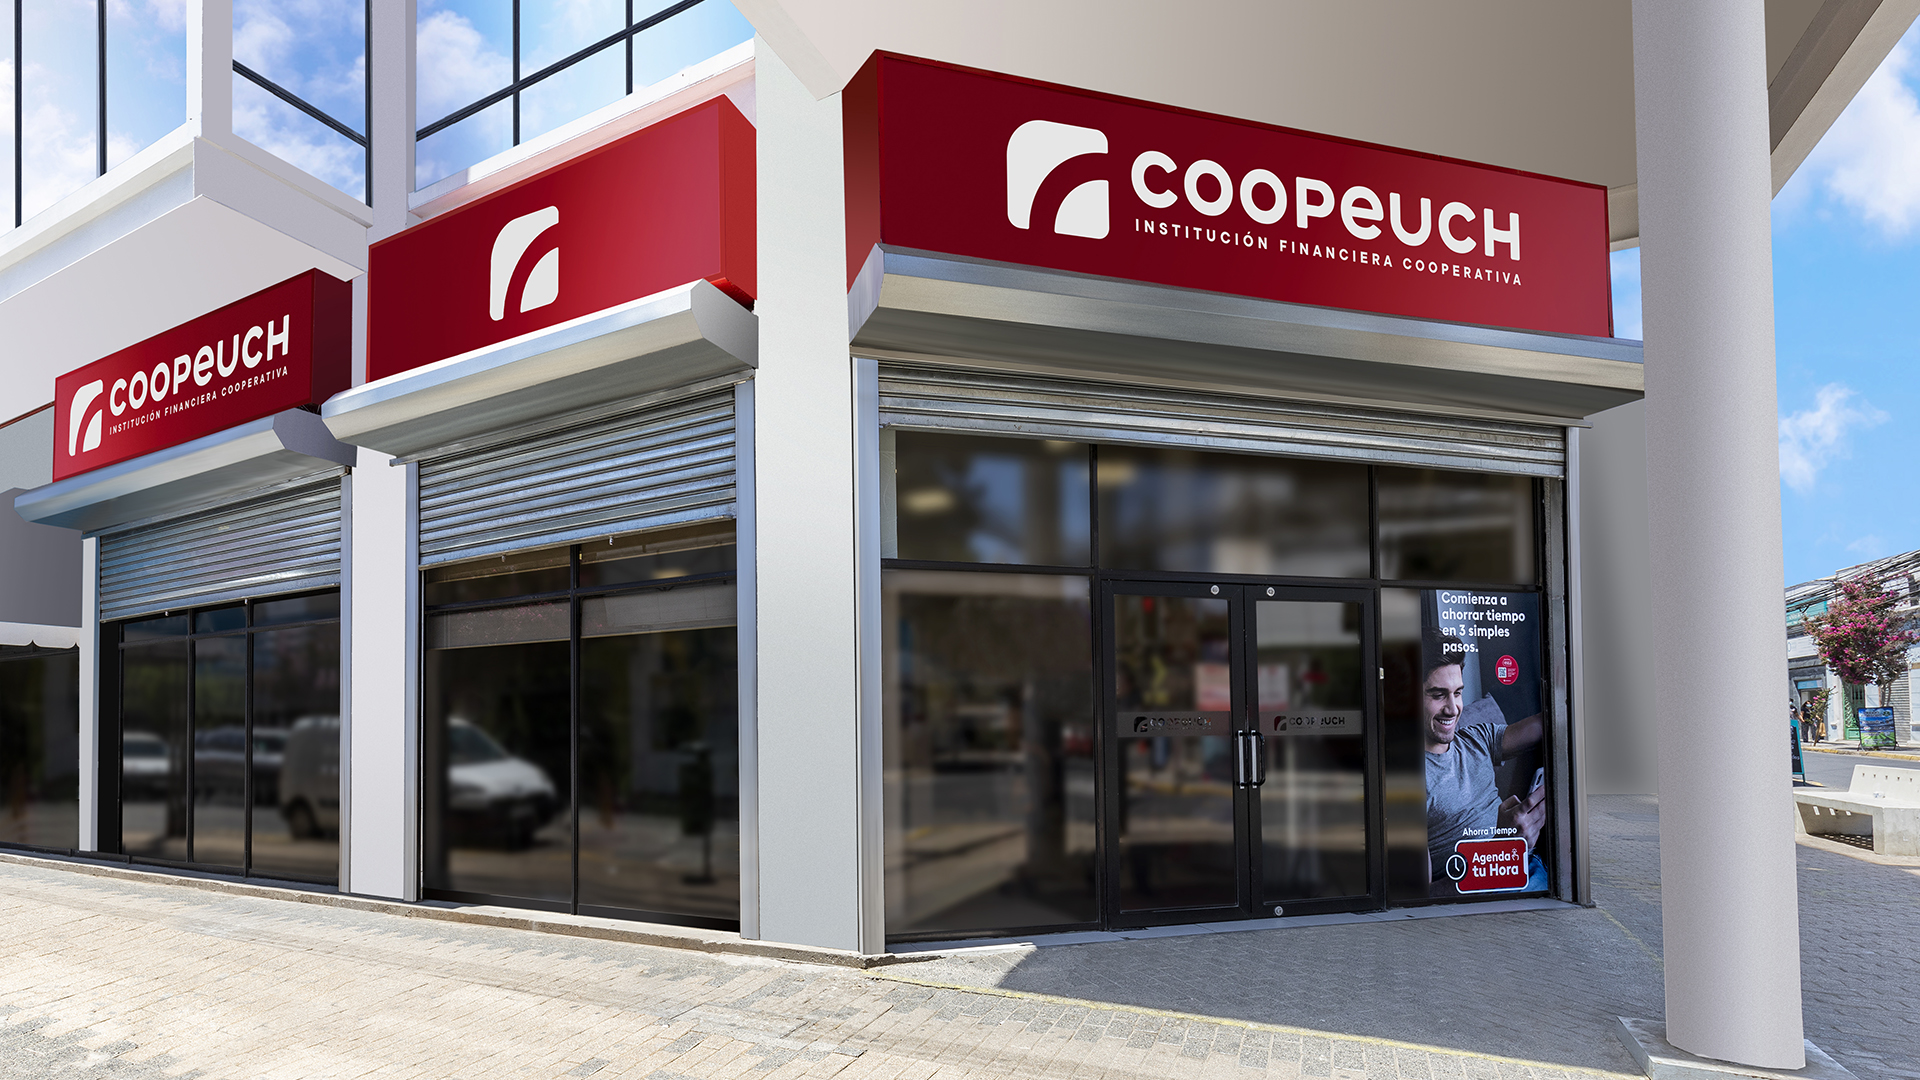 Coopeuch fue reconocida entre las 30 empresas más sostenibles de Chile